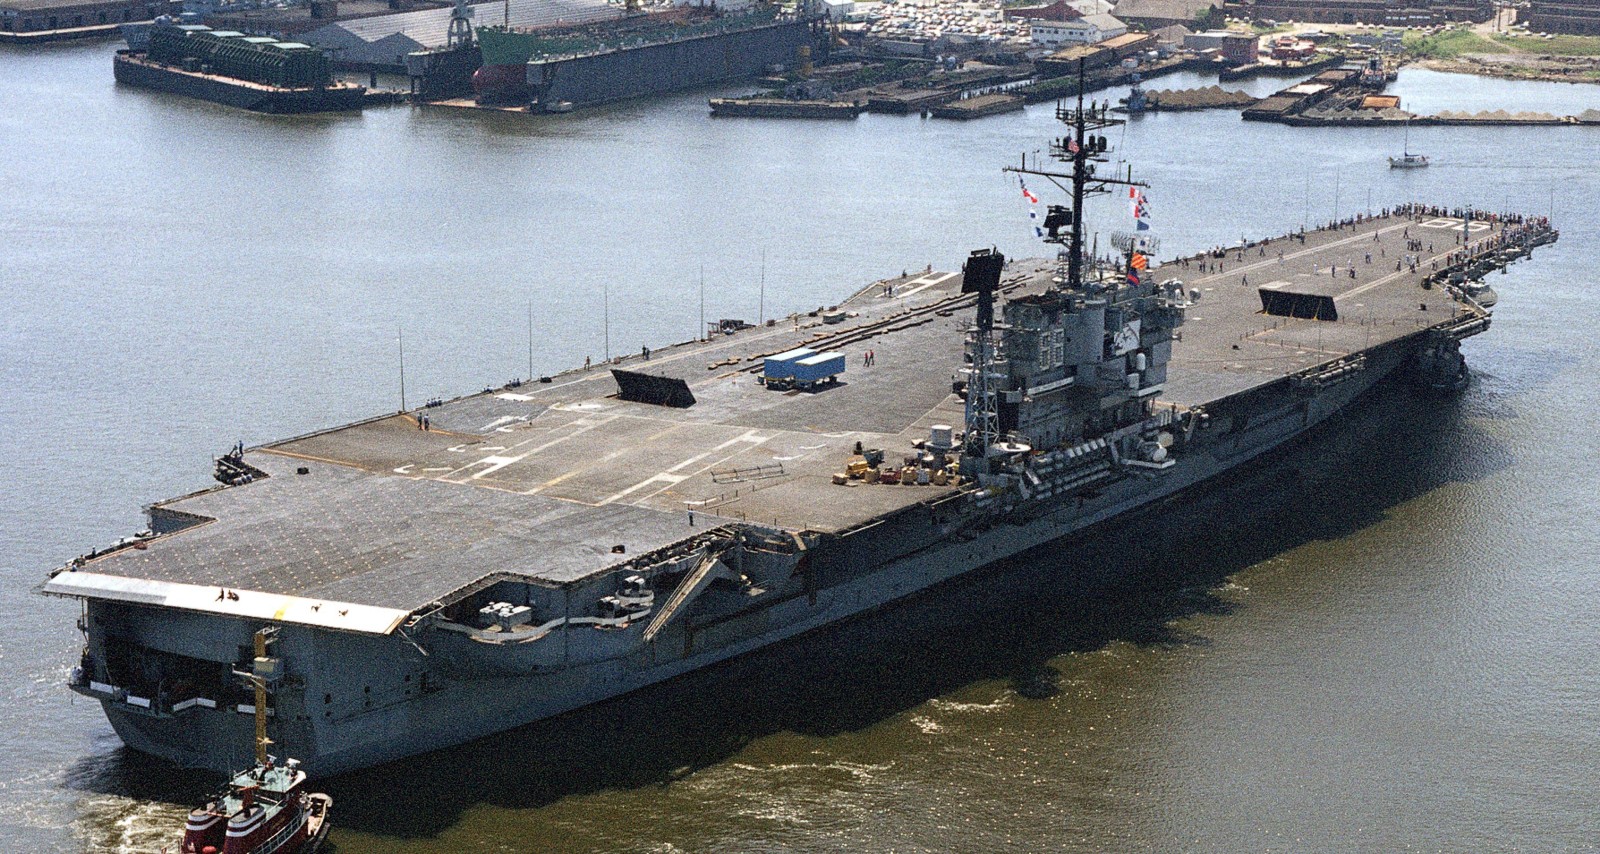 cv-66 uss america kitty hawk class aircraft carrier us navy sra norfolk naval shipyard 74